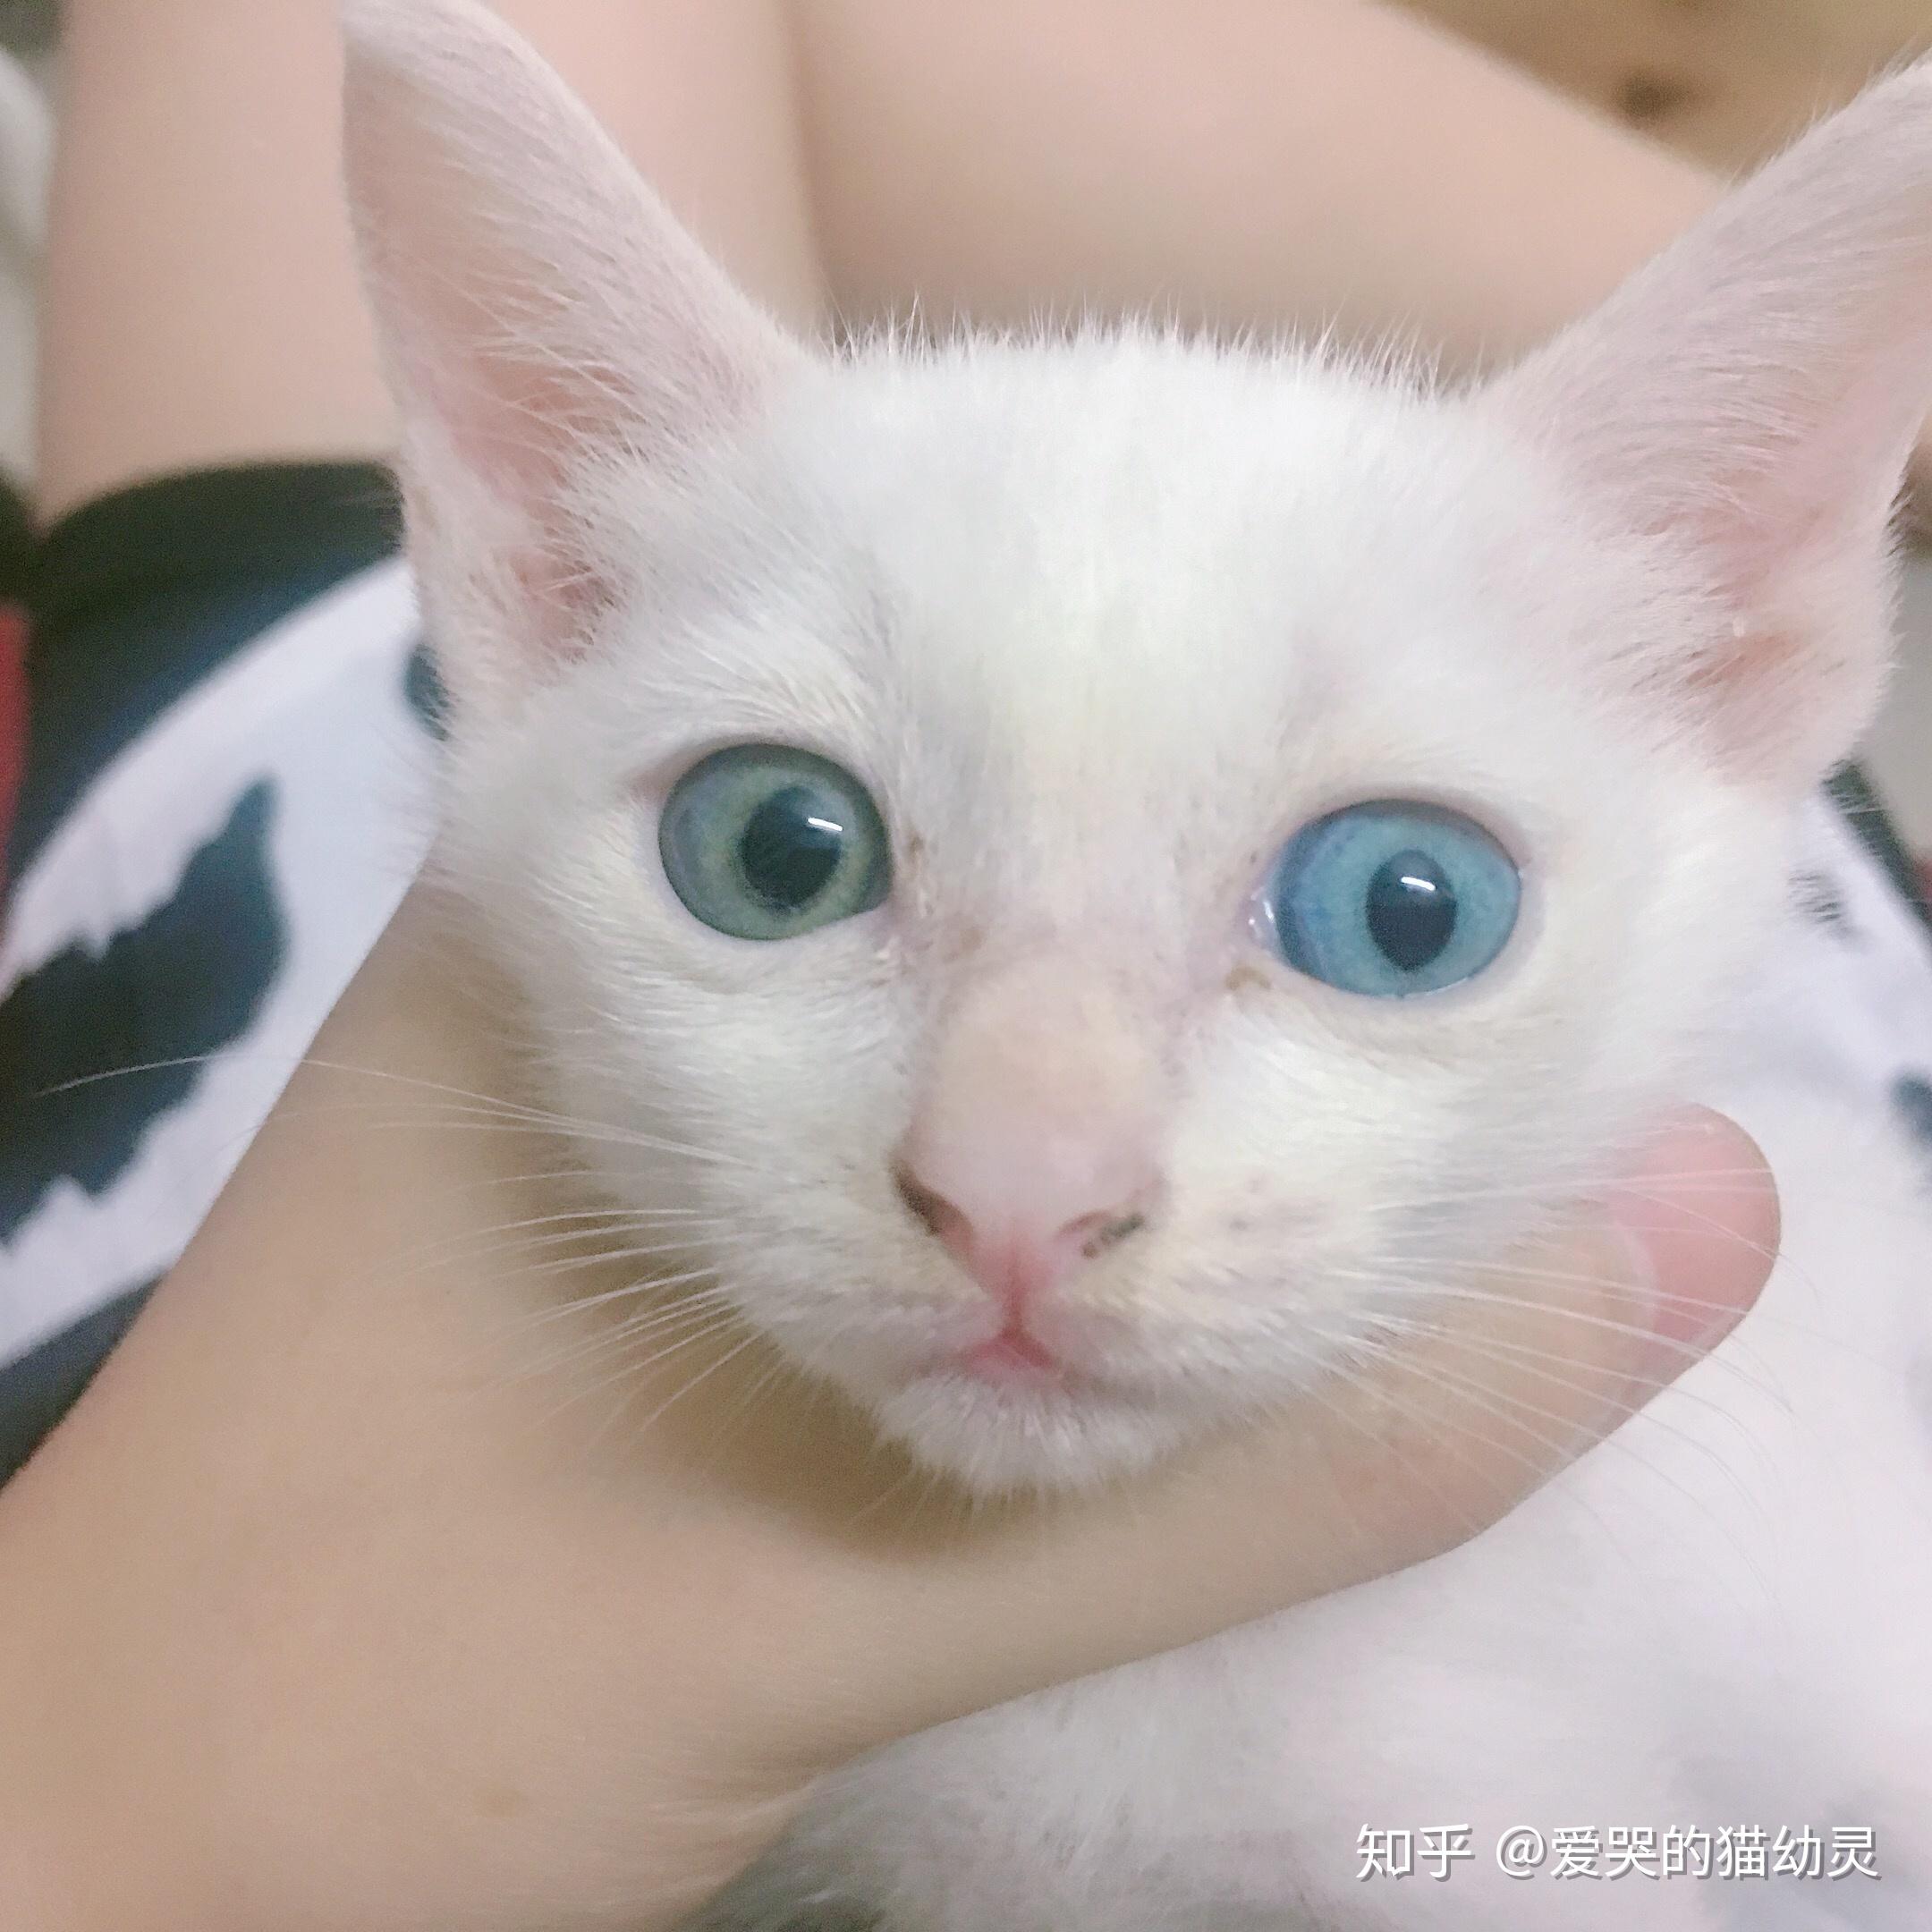 俄罗斯一对异色瞳白猫姐妹花近日在网上爆红